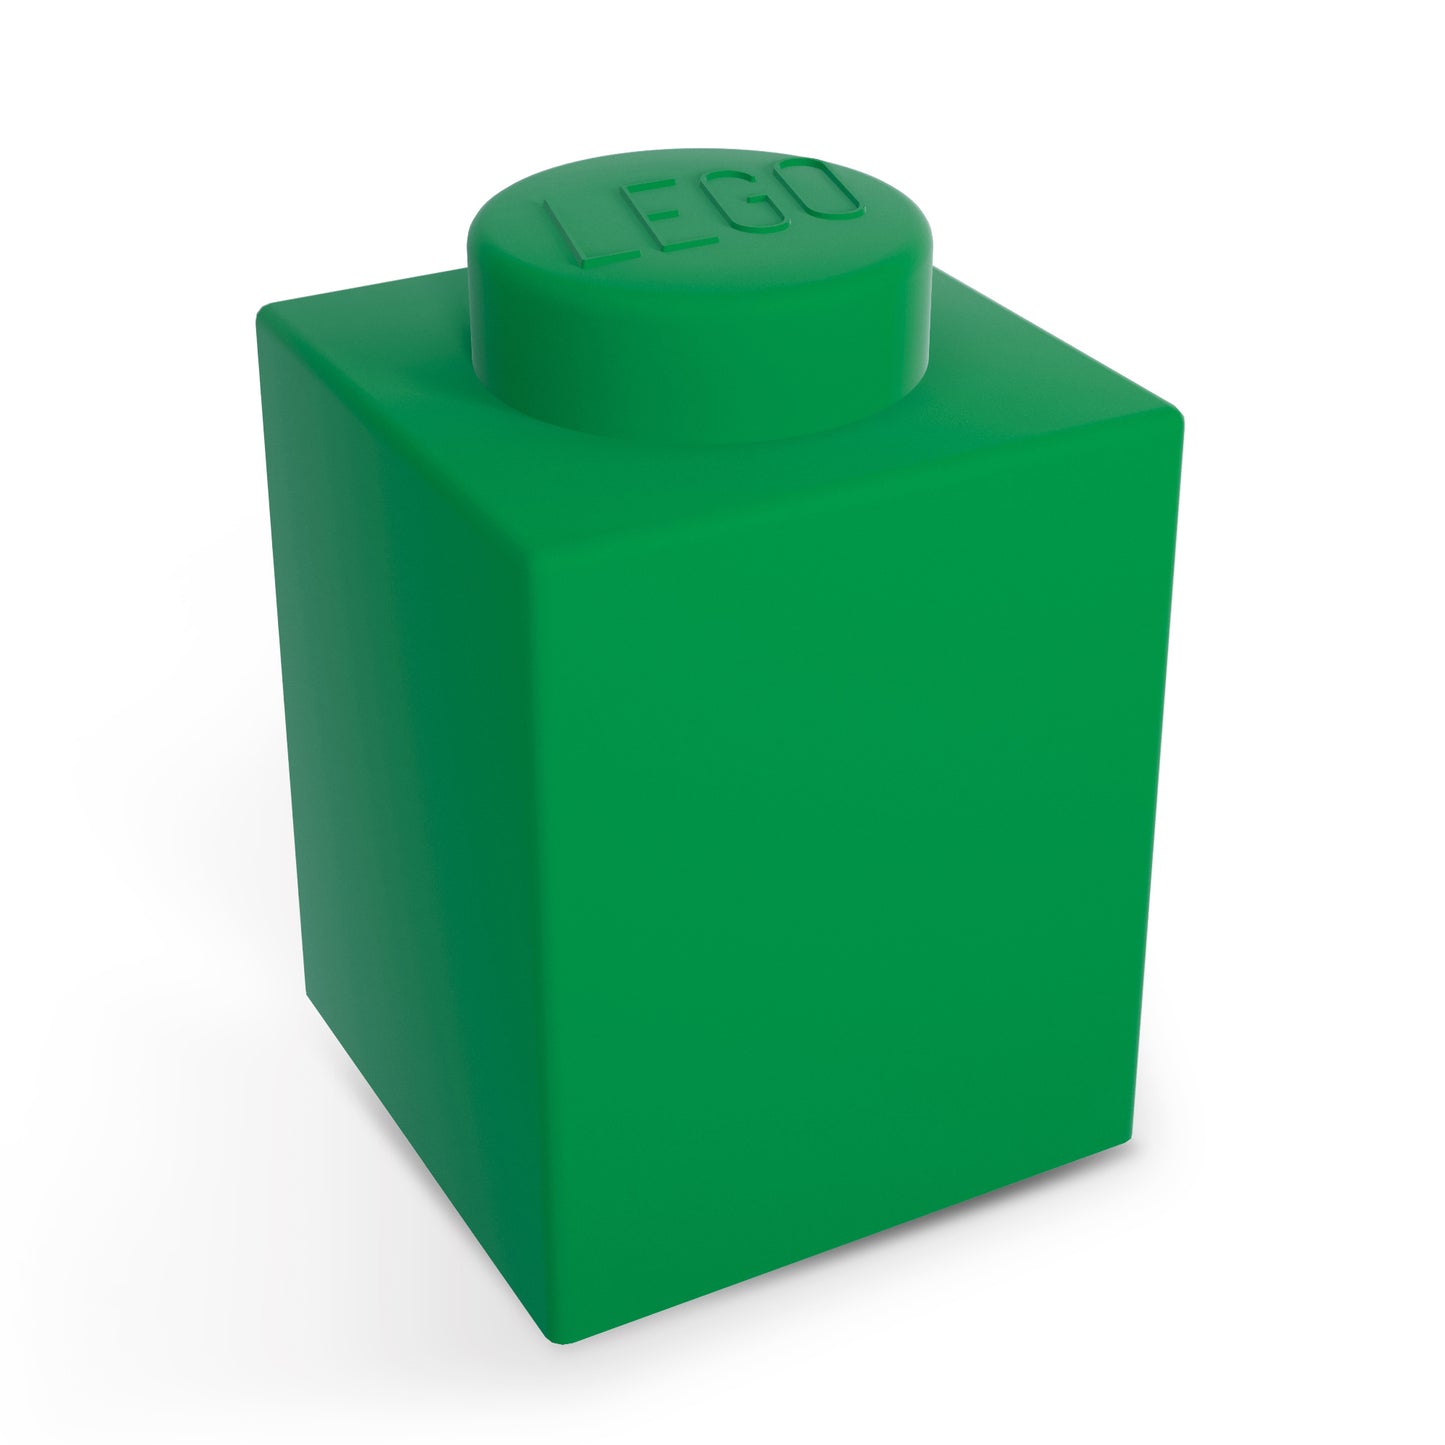 IQ 樂高 積木造型軟矽膠觸控變色燈 綠色 (LP41)